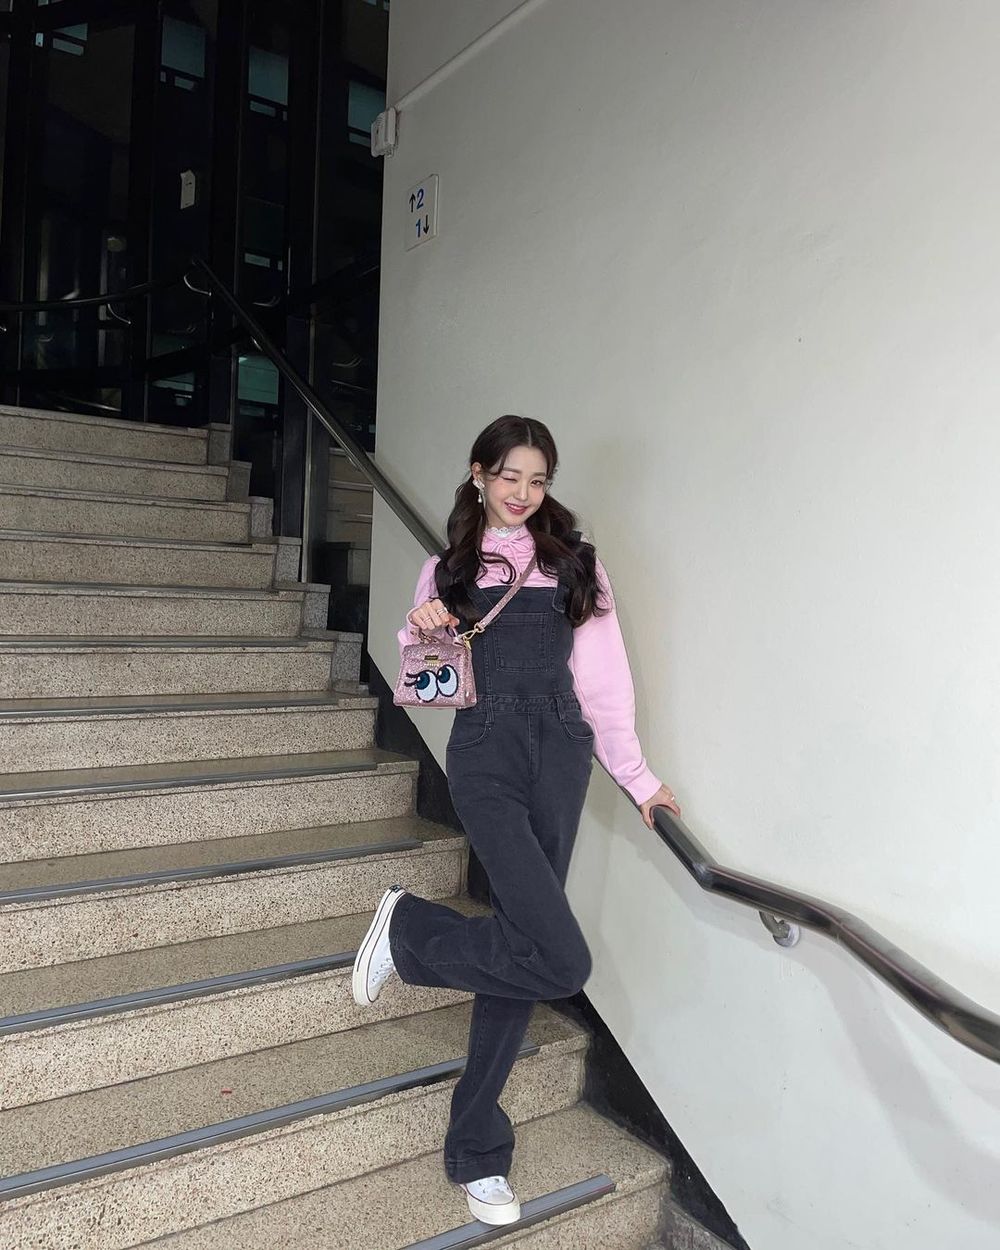  
Cầu thang là địa điểm sống ảo quen thuộc của Wonyoung. (Ảnh: Instagram @for_everyoung10)